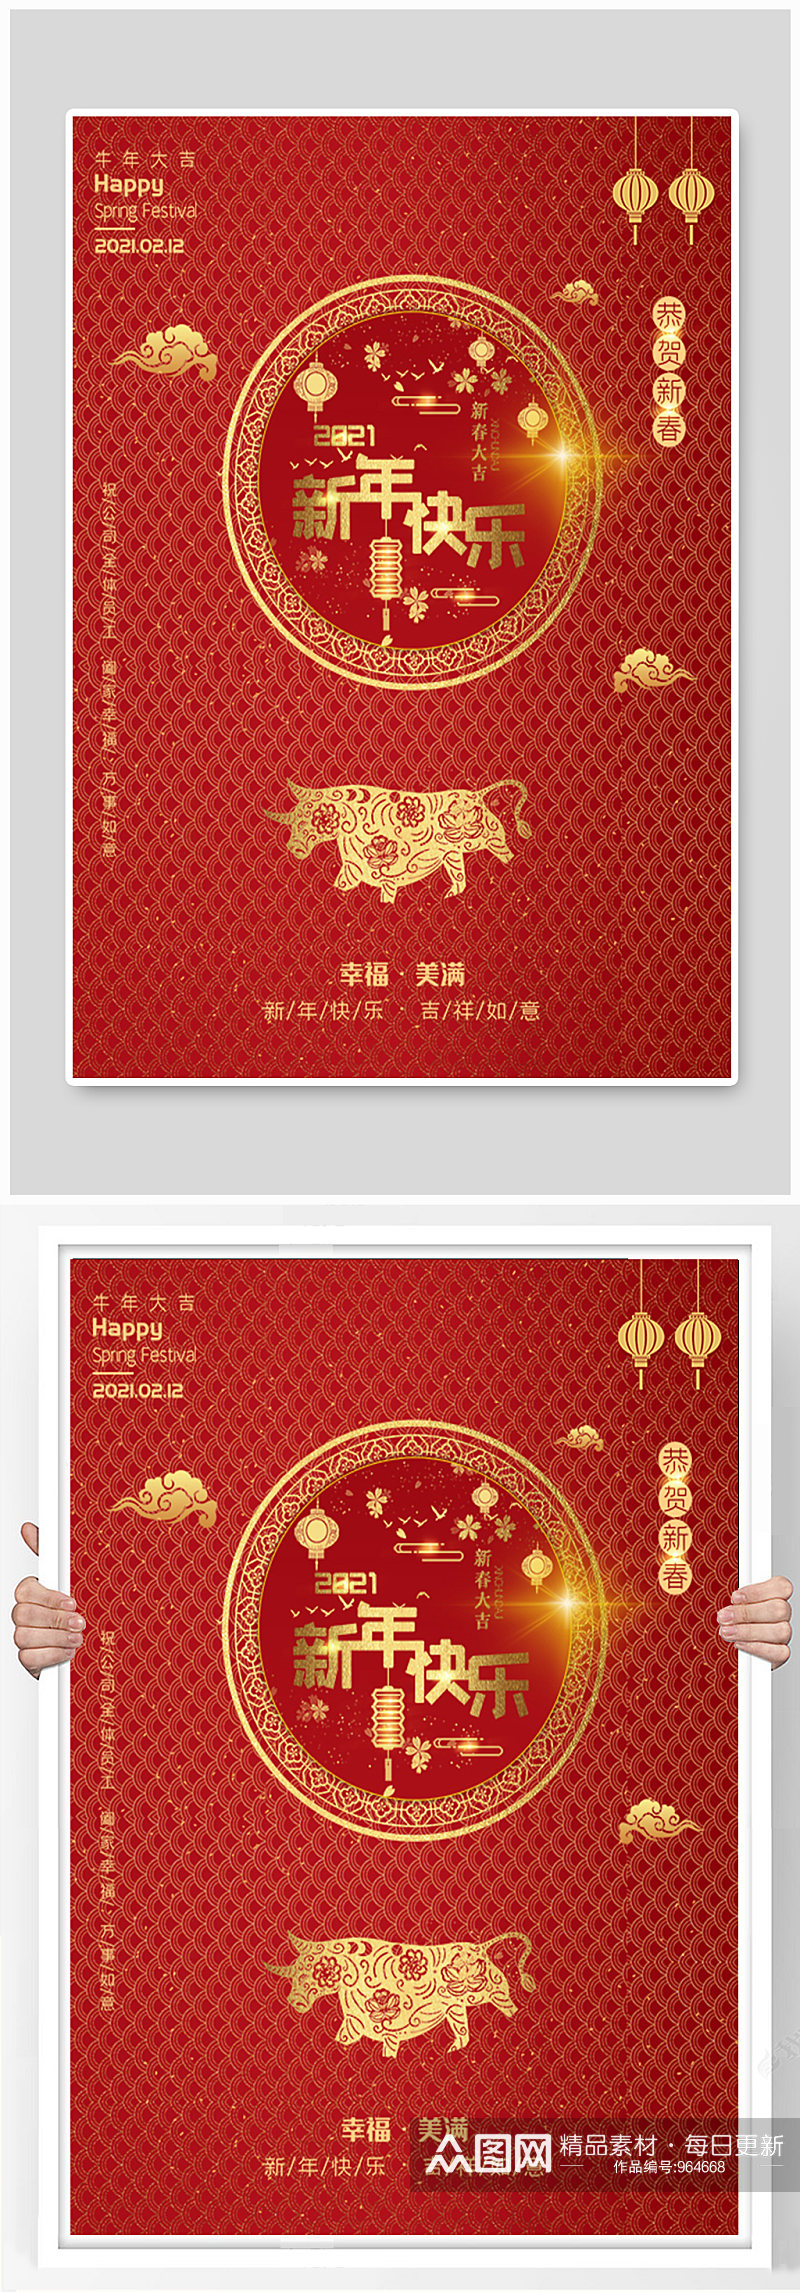 红色祝福员工新年春节快乐海报素材